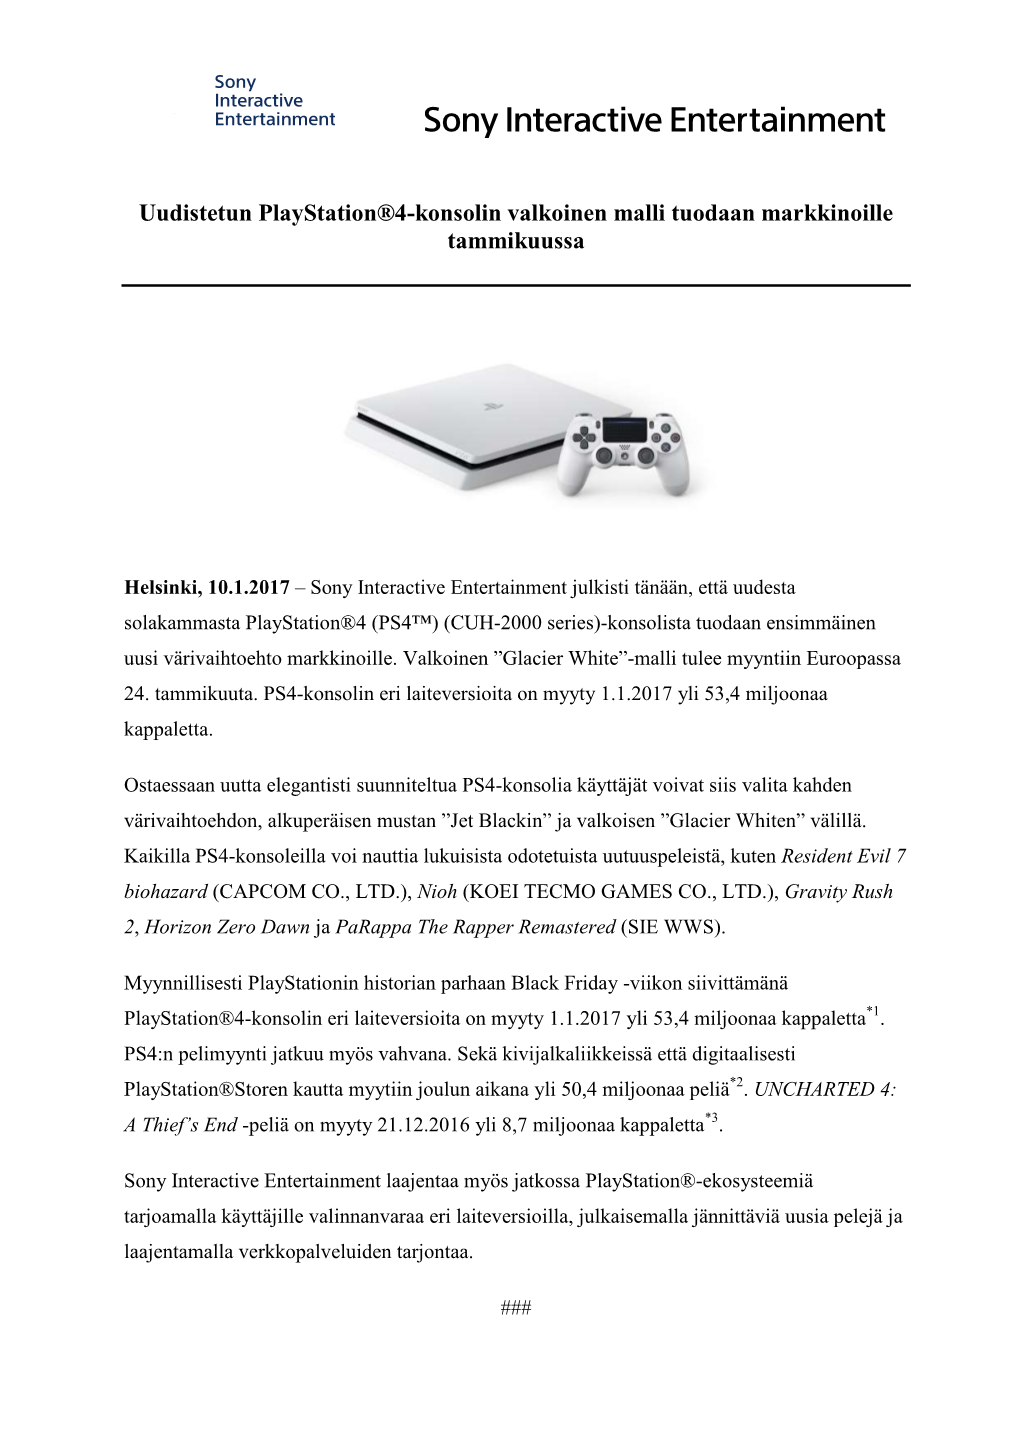 Uudistetun Playstation®4-Konsolin Valkoinen Malli Tuodaan Markkinoille Tammikuussa